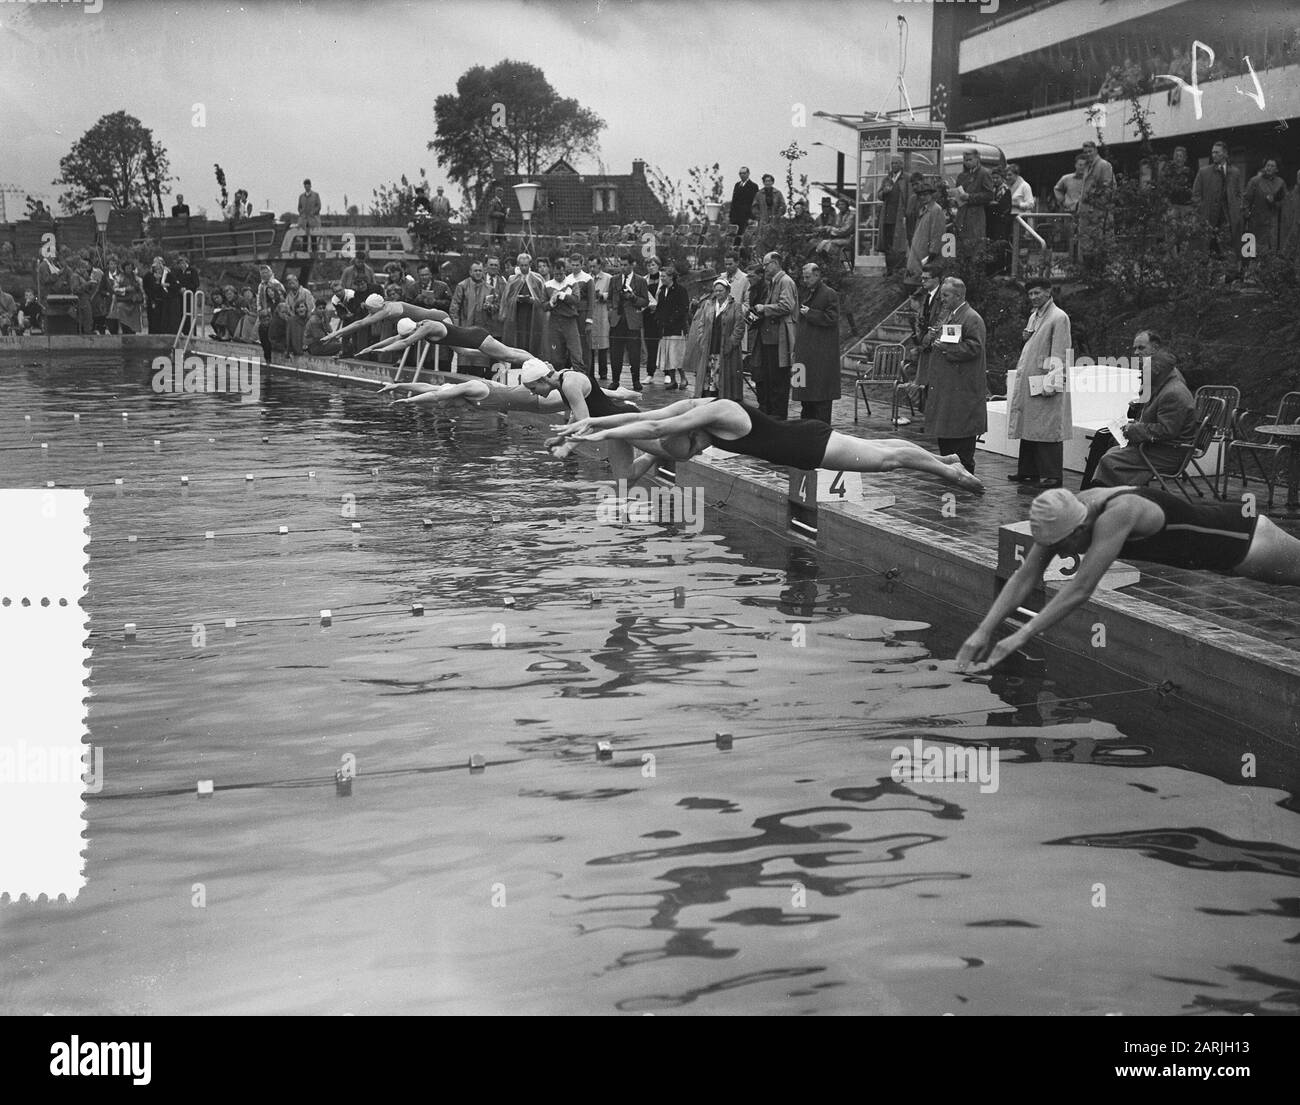 Schwimmmeisterschaft Niederlande Groningen, Start 100 m Freistil Datum: 7. August 1955 Ort: Groningen Schlagwörter: Schwimmweltmeisterschaften Stockfoto